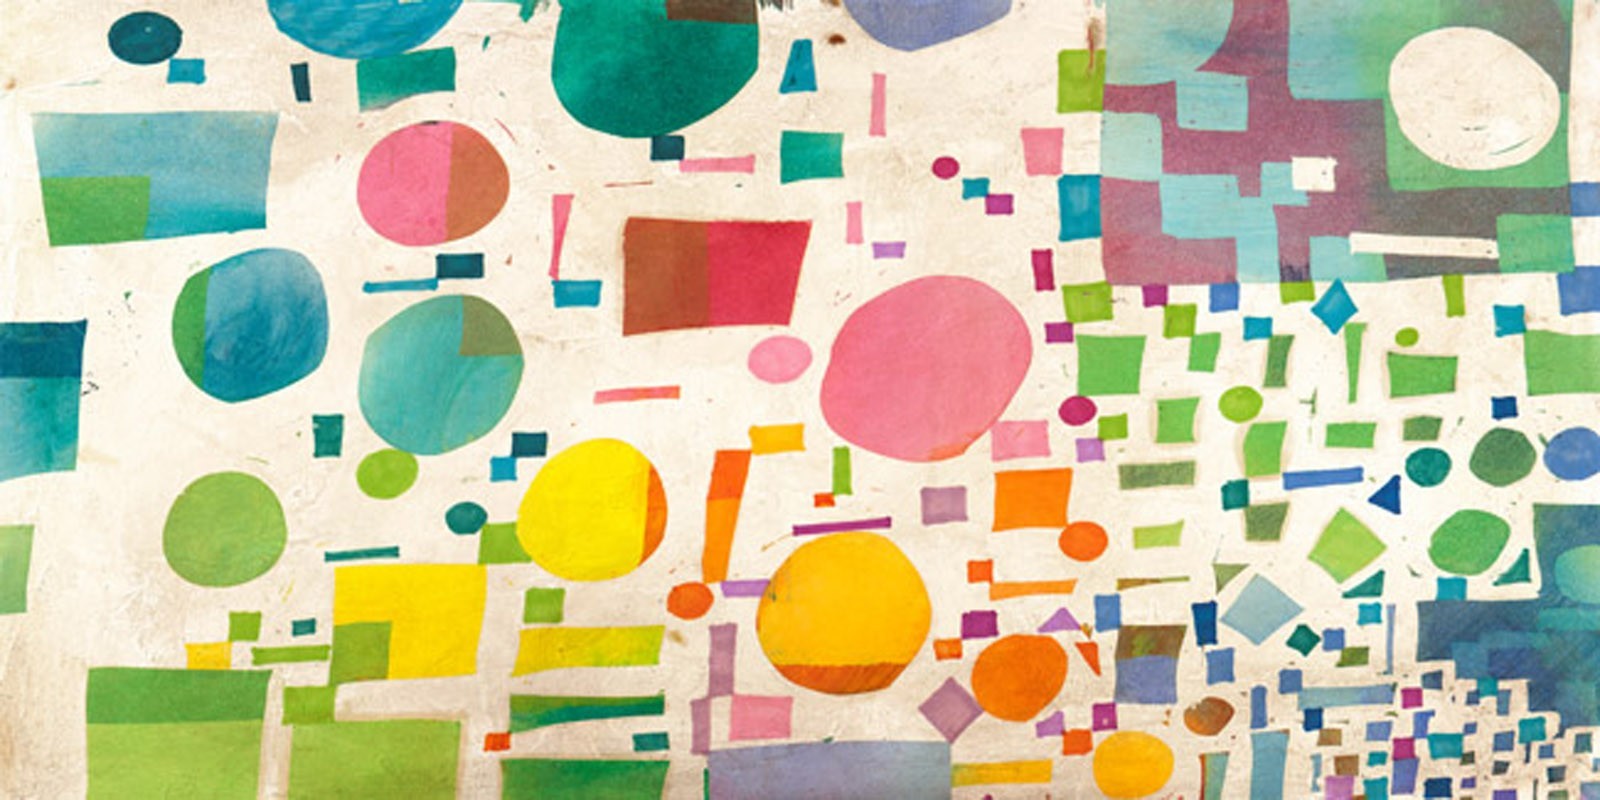 Leonardo Bacci - Multicolor Pattern I